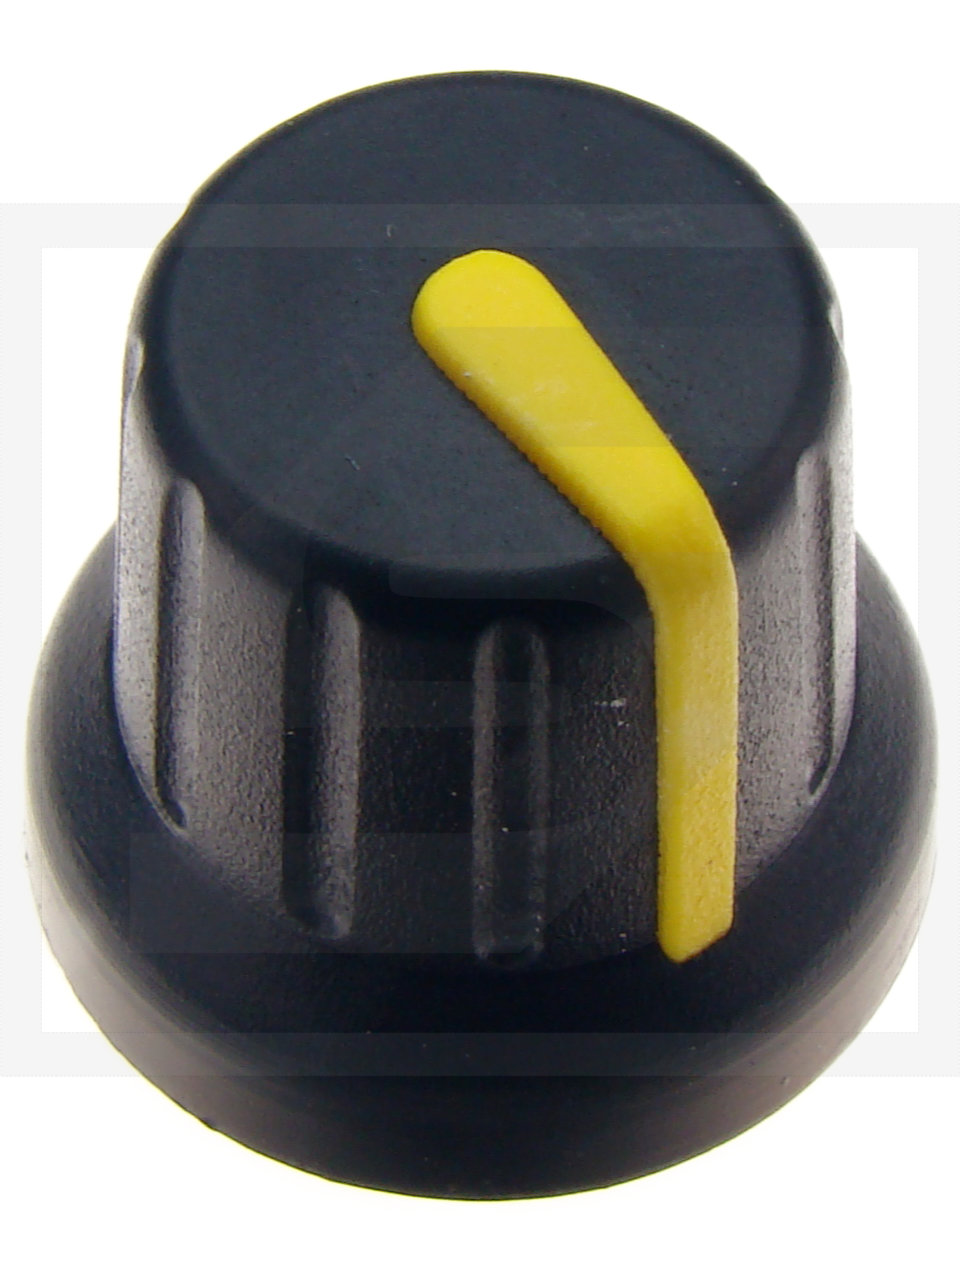 Pokrętło N-4 znacznik żółty; średnica osi 6mm;fi 16x14mm;